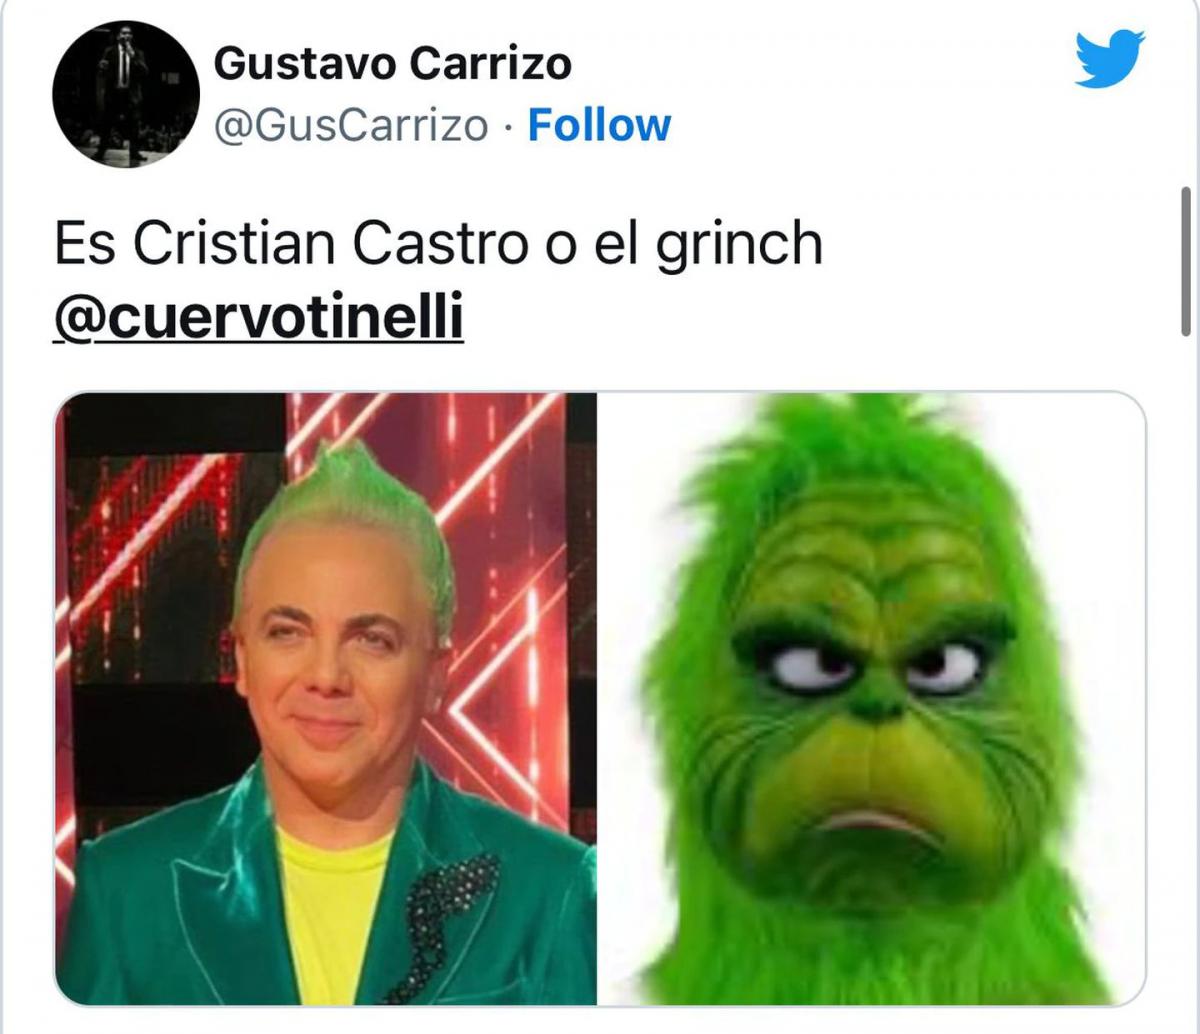 Canta Conmigo Ahora: Cristian Castro se disfrazó de Willy Wonka y regaló caramelos